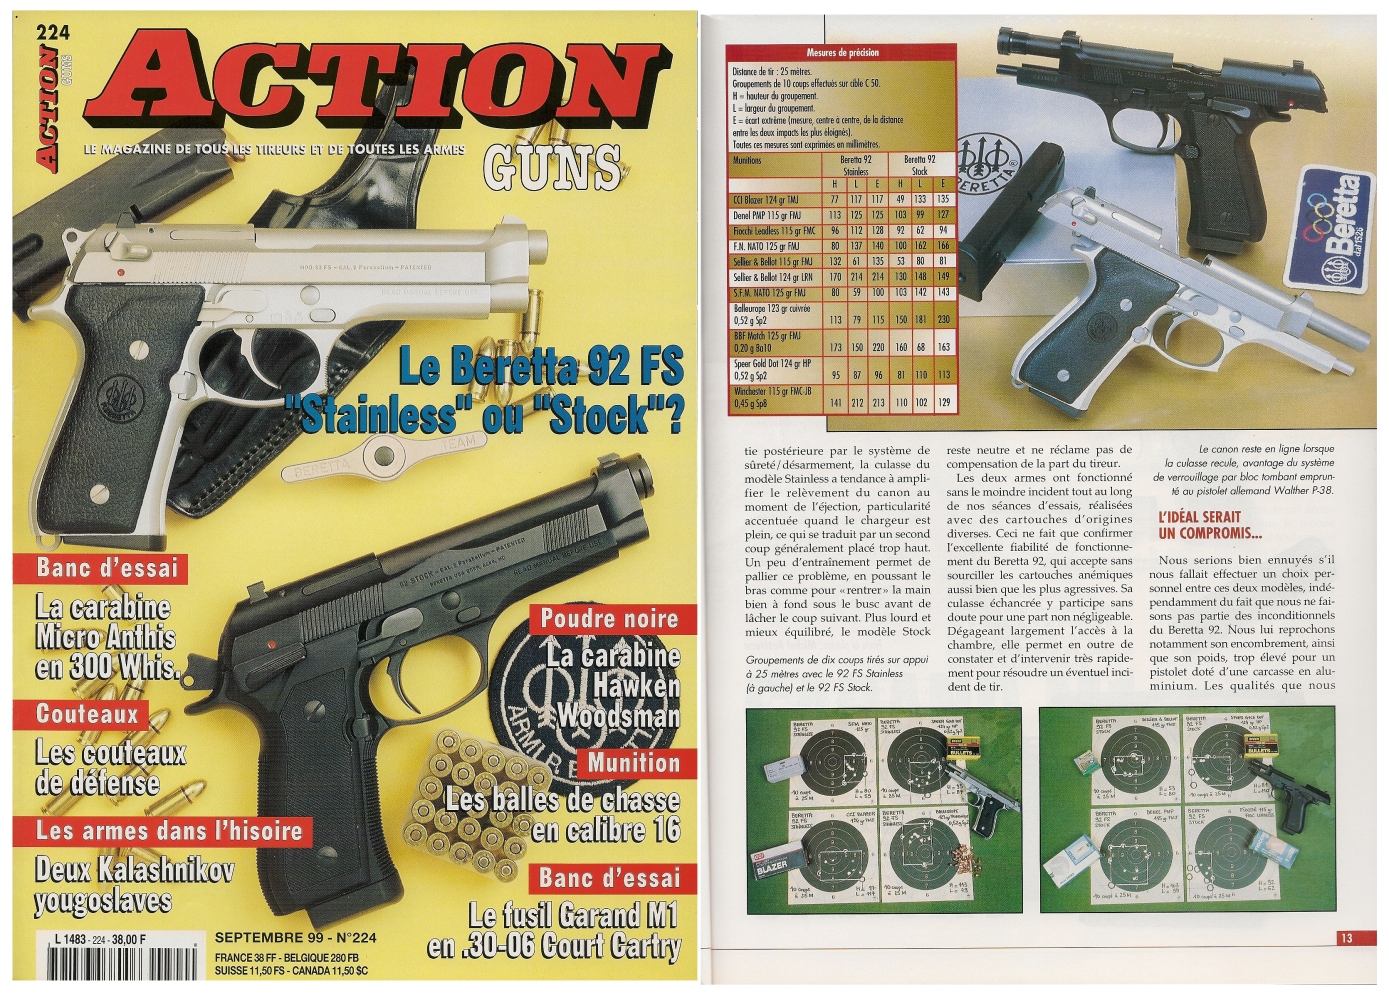 Le banc d’essai des pistolets Beretta 92 modèles « Stainless » et « Stock » a été publié sur 7 pages dans le magazine Action Guns n° 224 (septembre 1999).